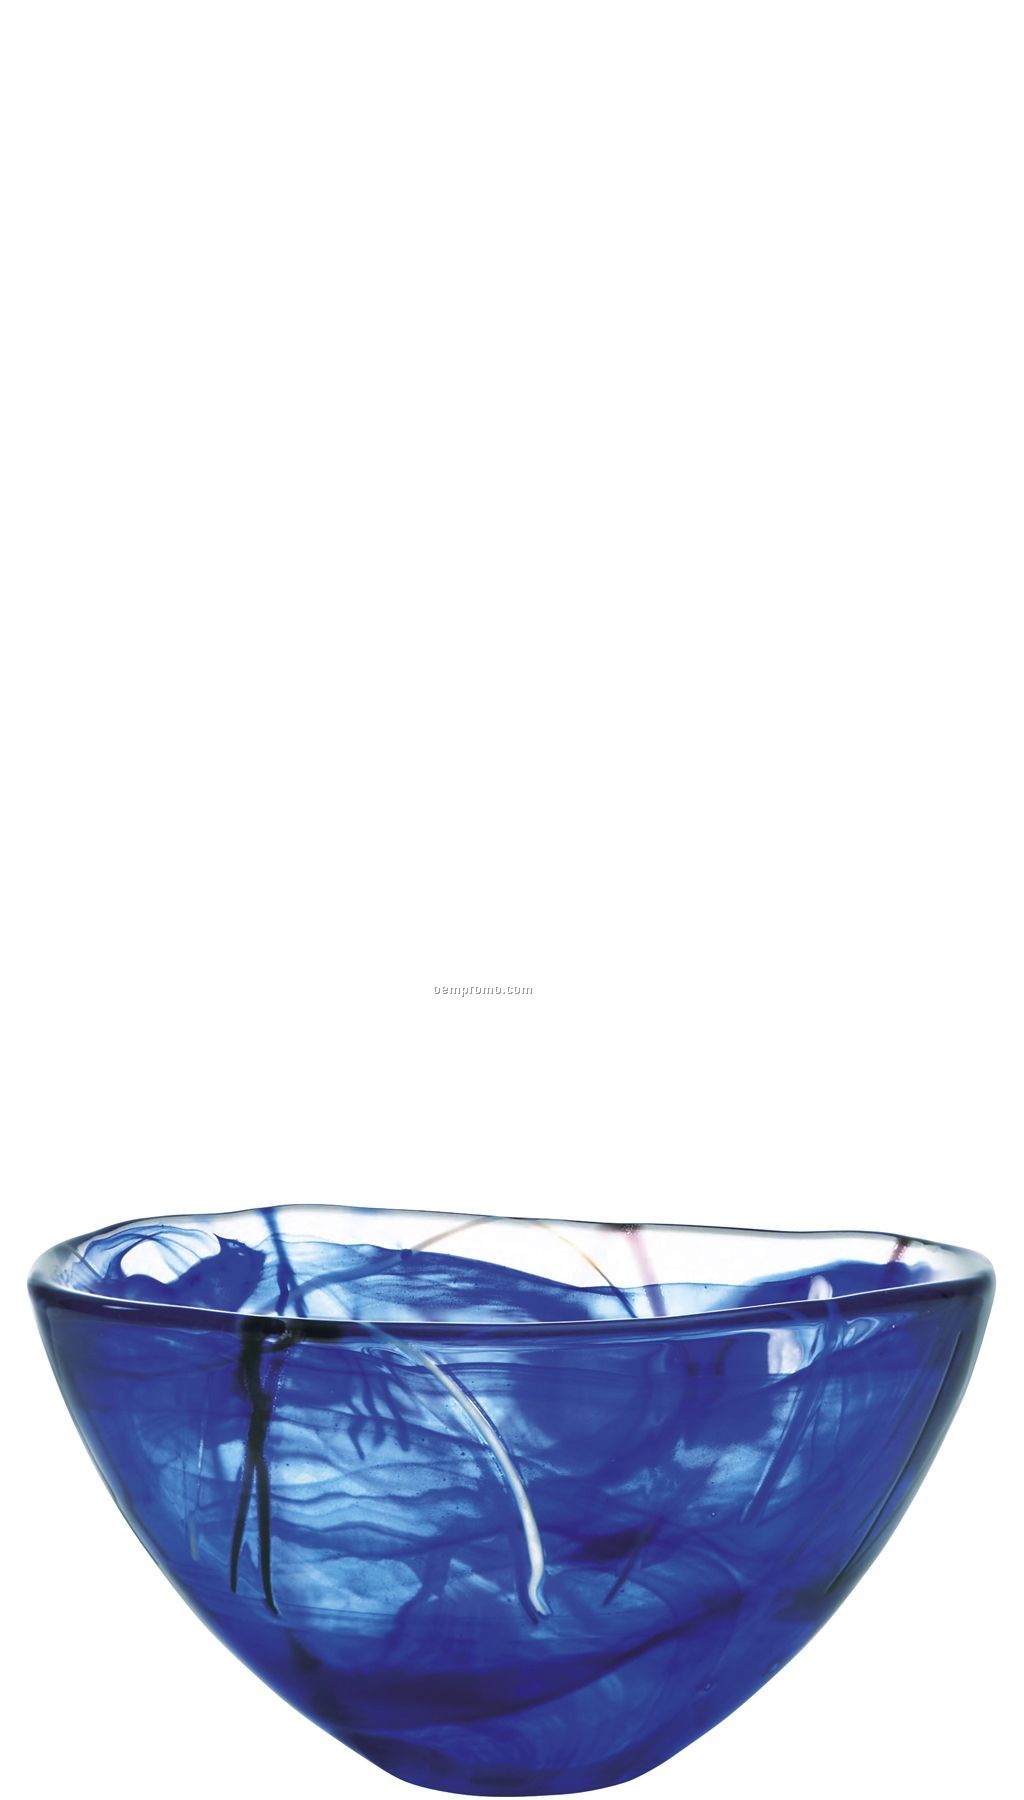 Contrast Medium Swirl Crystal Bowl By Anna Ehrner (Blue)